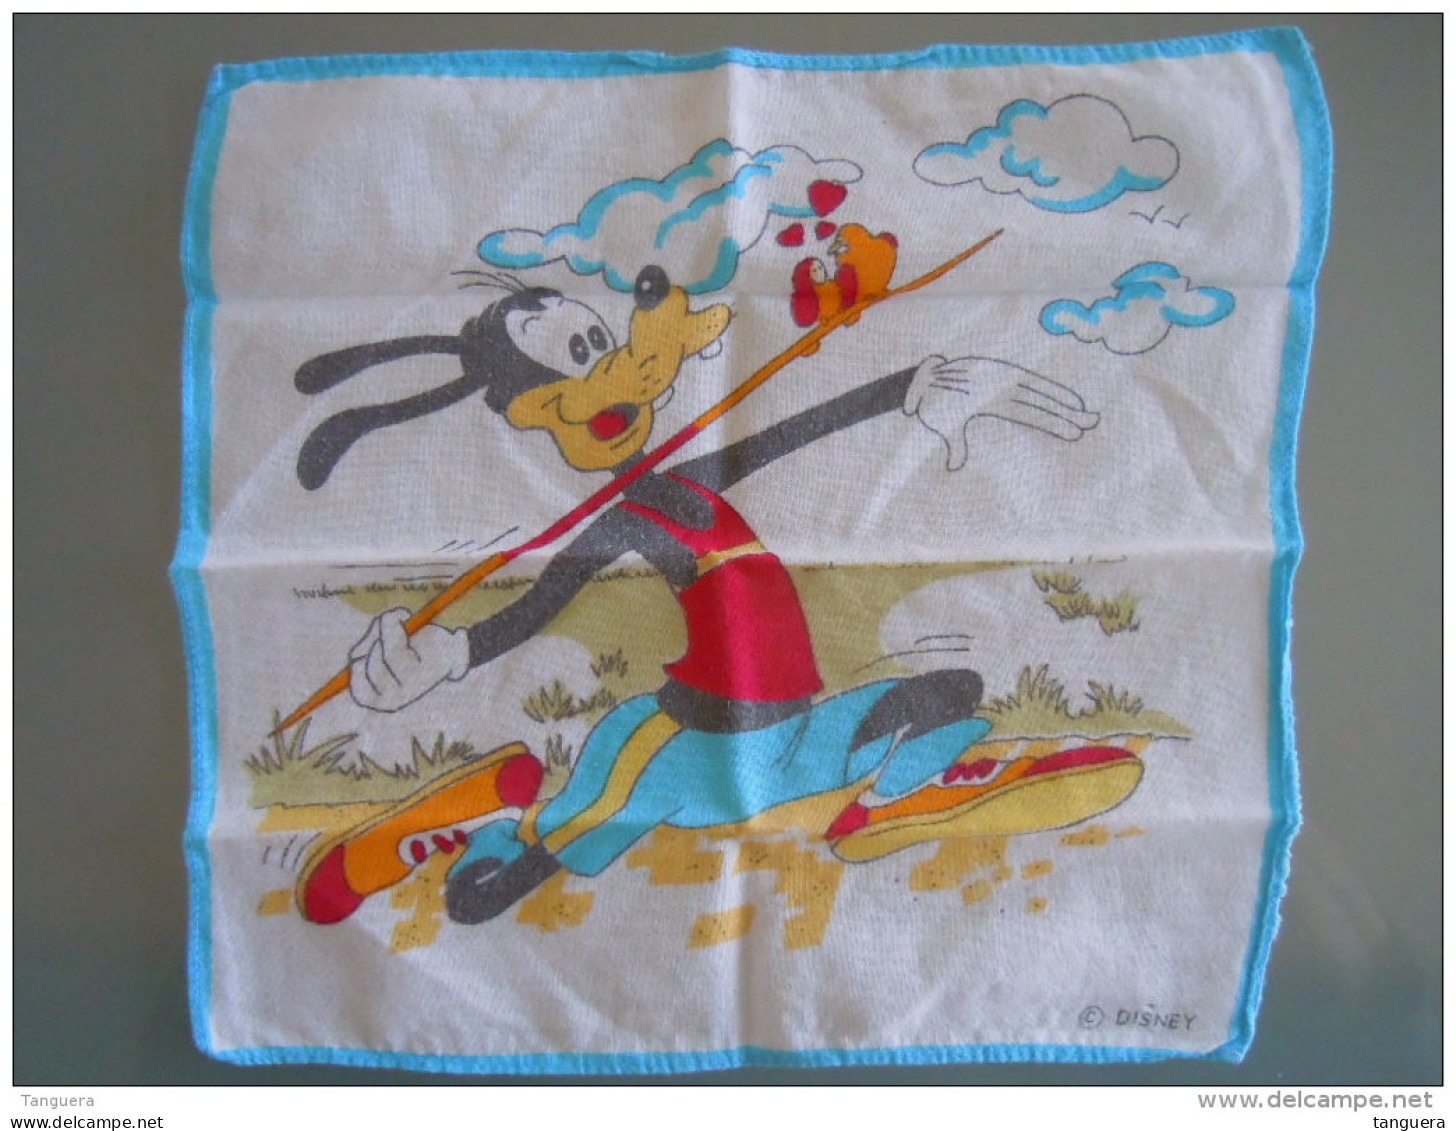 Mouchoir D'enfant Kinderzakdoek  Walt Disney Productions Goffy Speerwerpen Javelot Lancer - Handkerchiefs